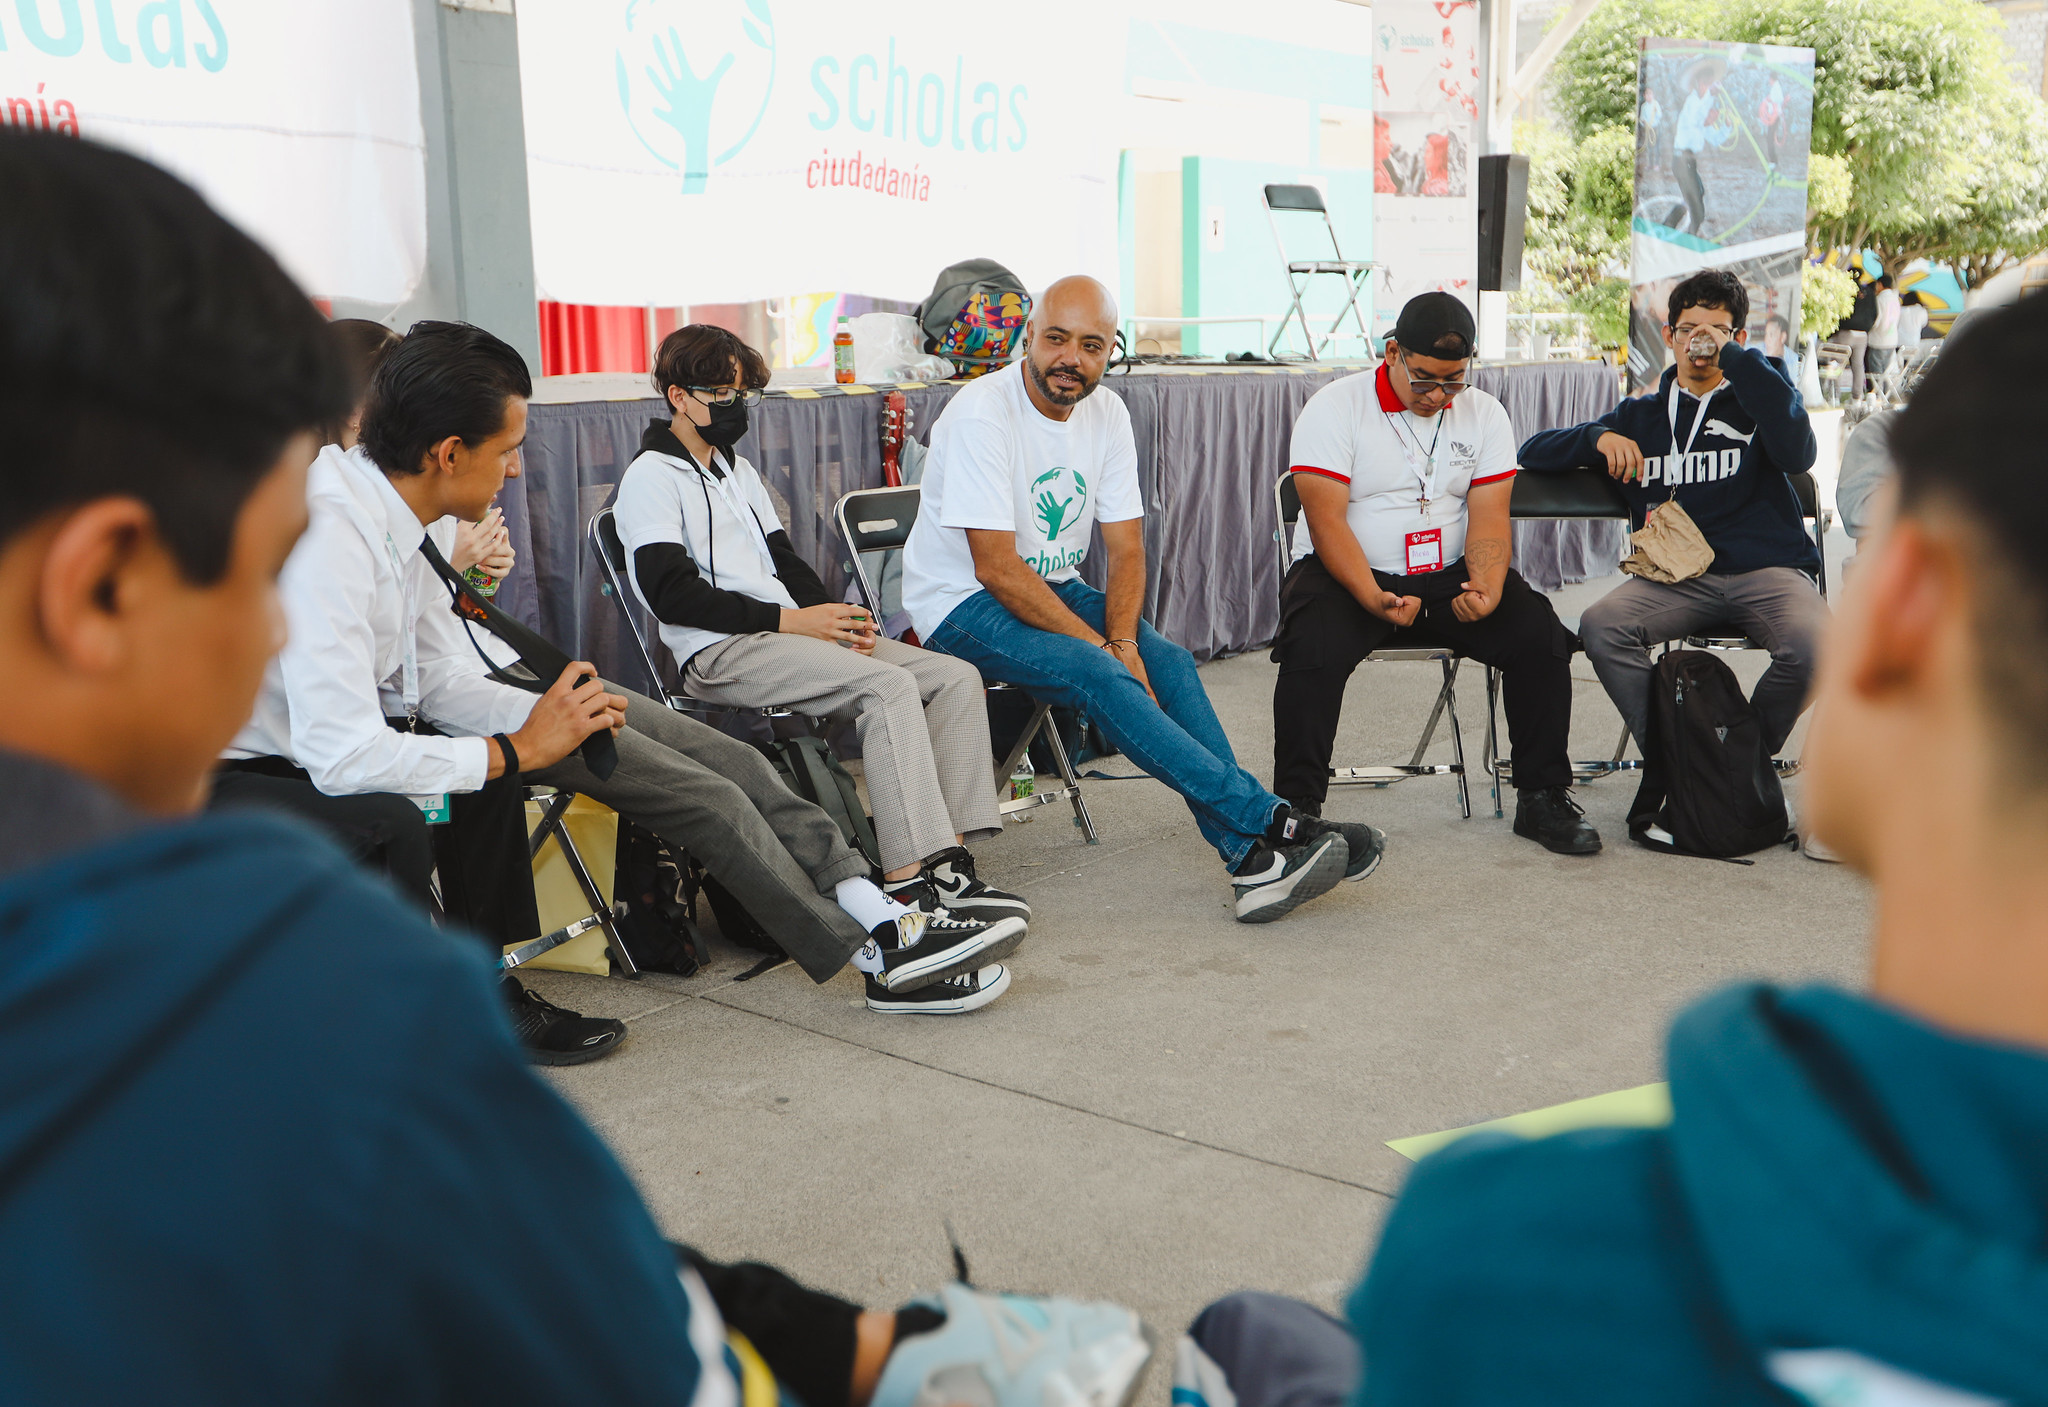 Inicia intervención Scholas con estudiantes de Tlajomulco de Zúñiga